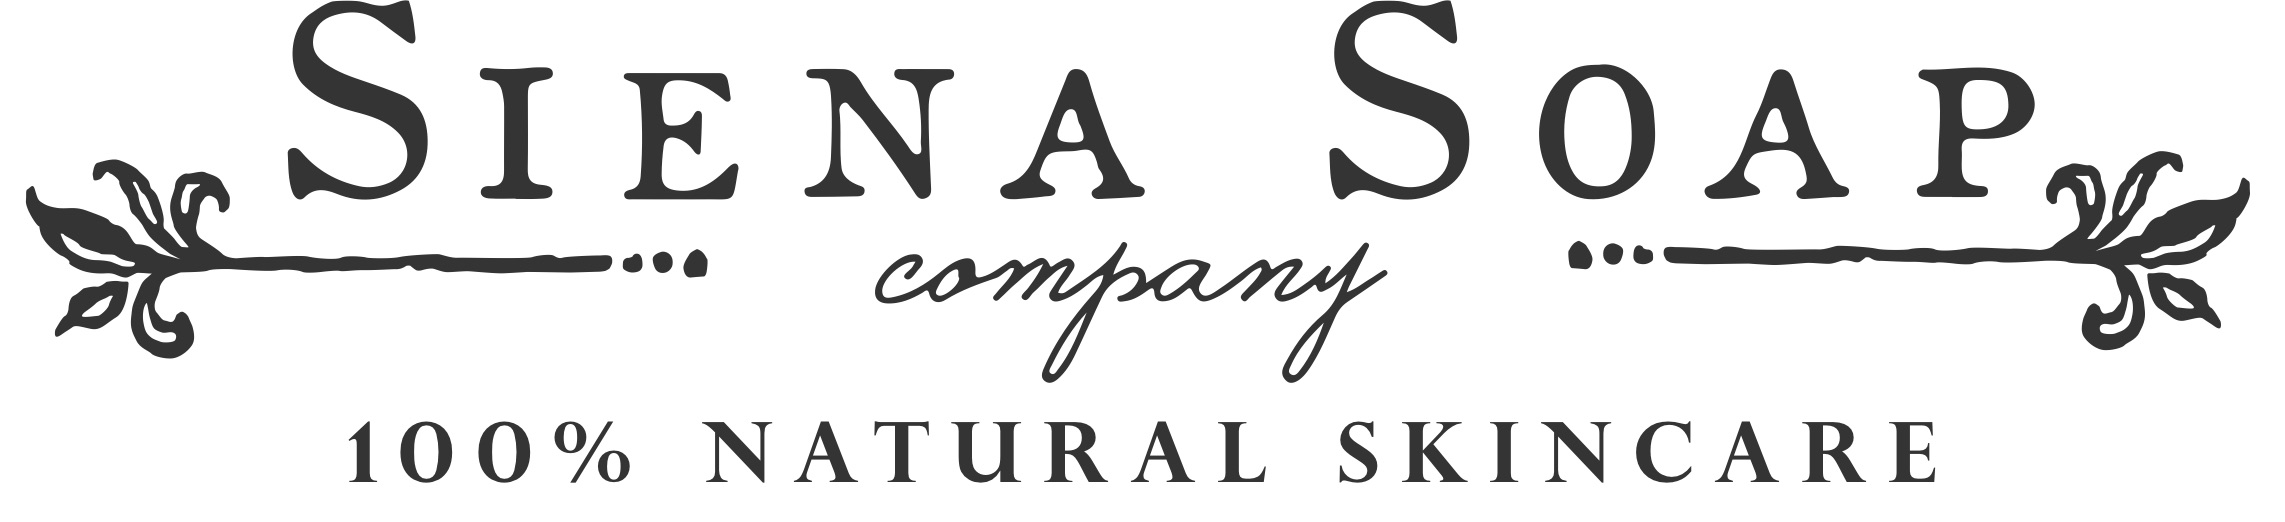 Siena Soap Company